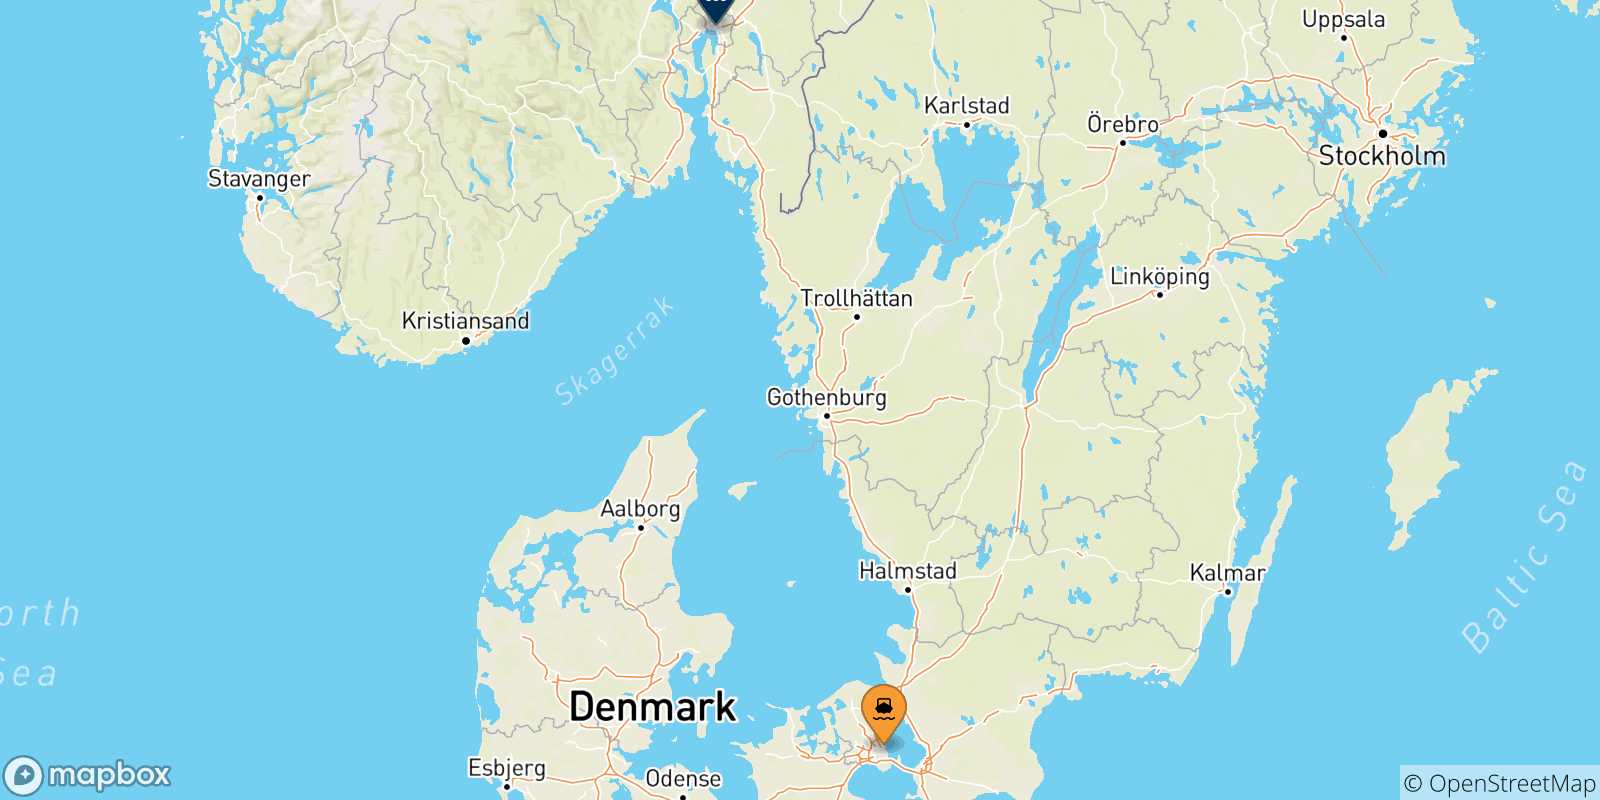 Mappa delle possibili rotte tra la Danimarca e la Norvegia